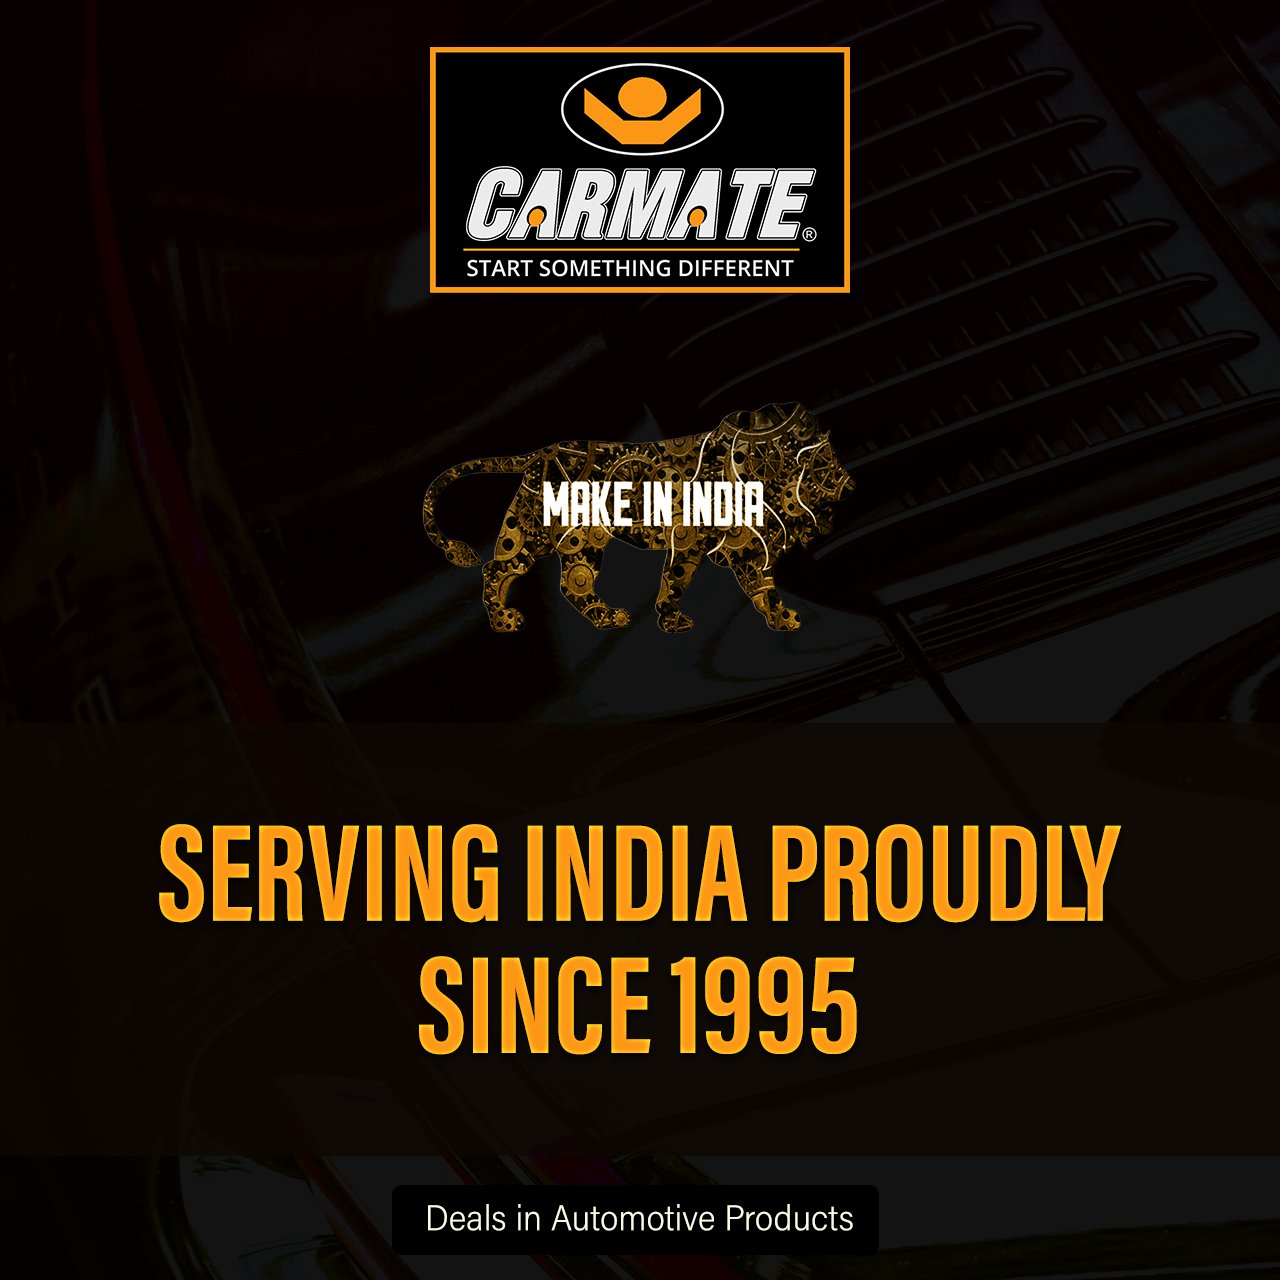 Carmate Single Color Car Grass Floor Mat, Anti-Skid Curl Car Foot Mats for Mahindra Thar